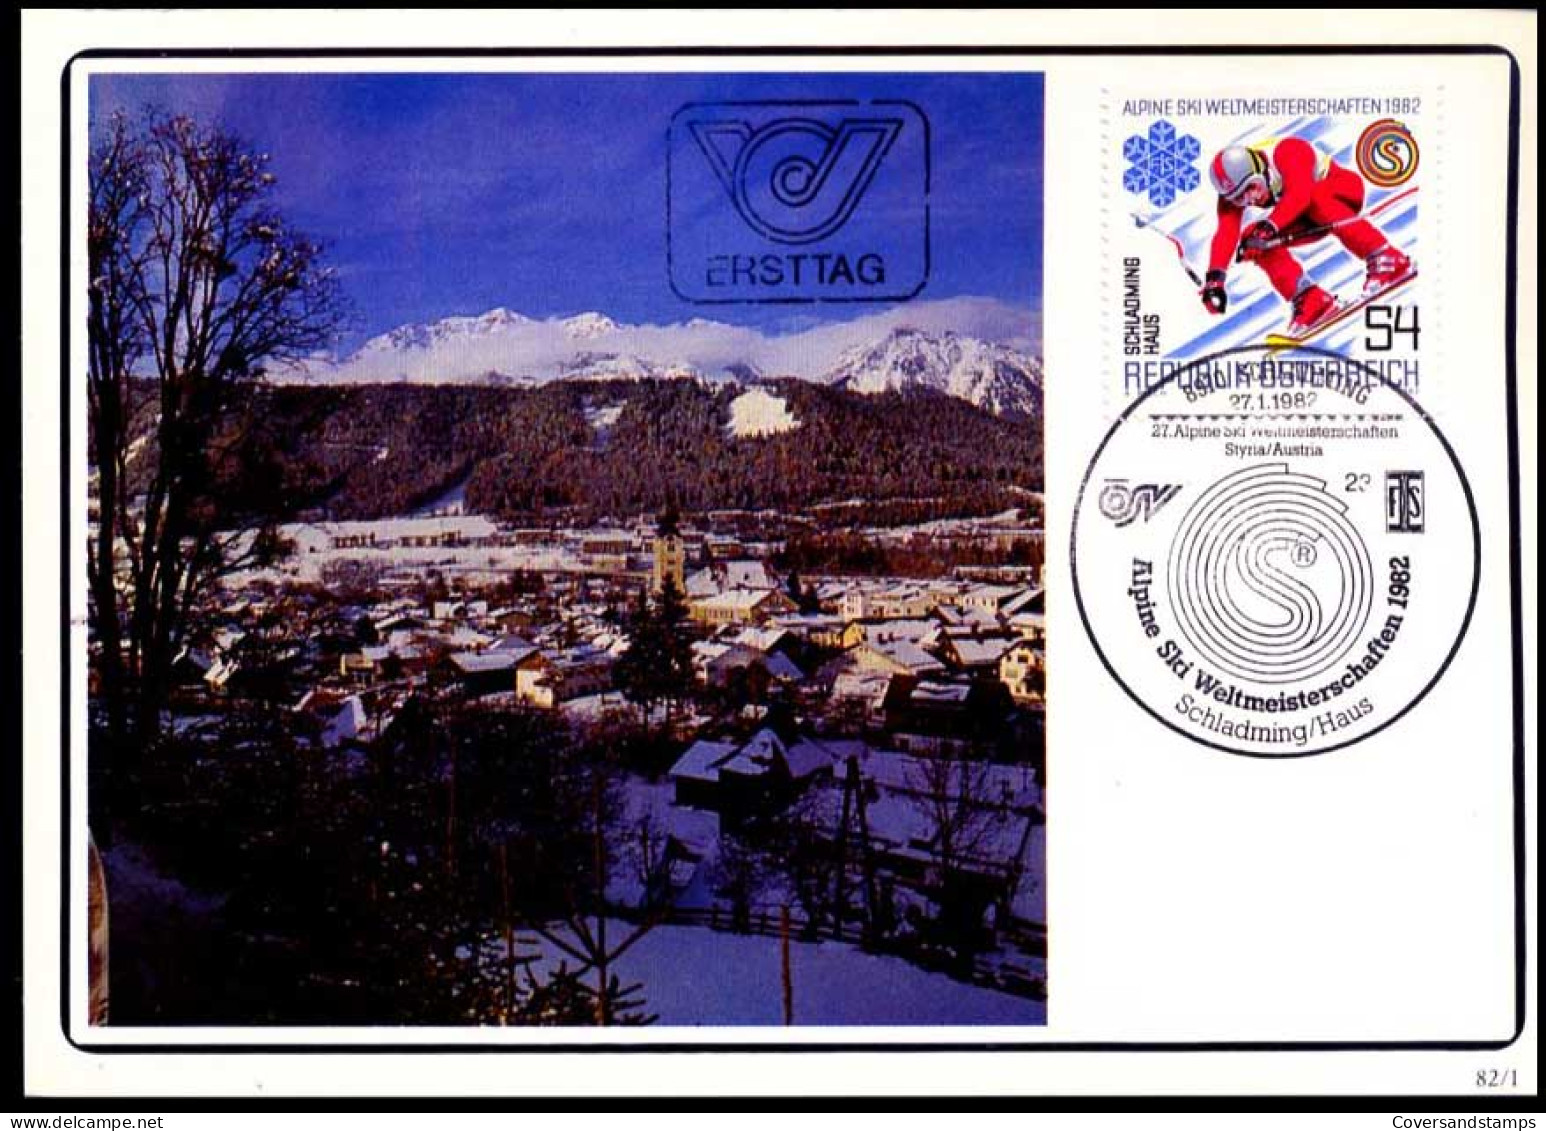 Oostenrijk - MK - Alpine Skiweltmeisterschaften                                           - Maximumkarten (MC)